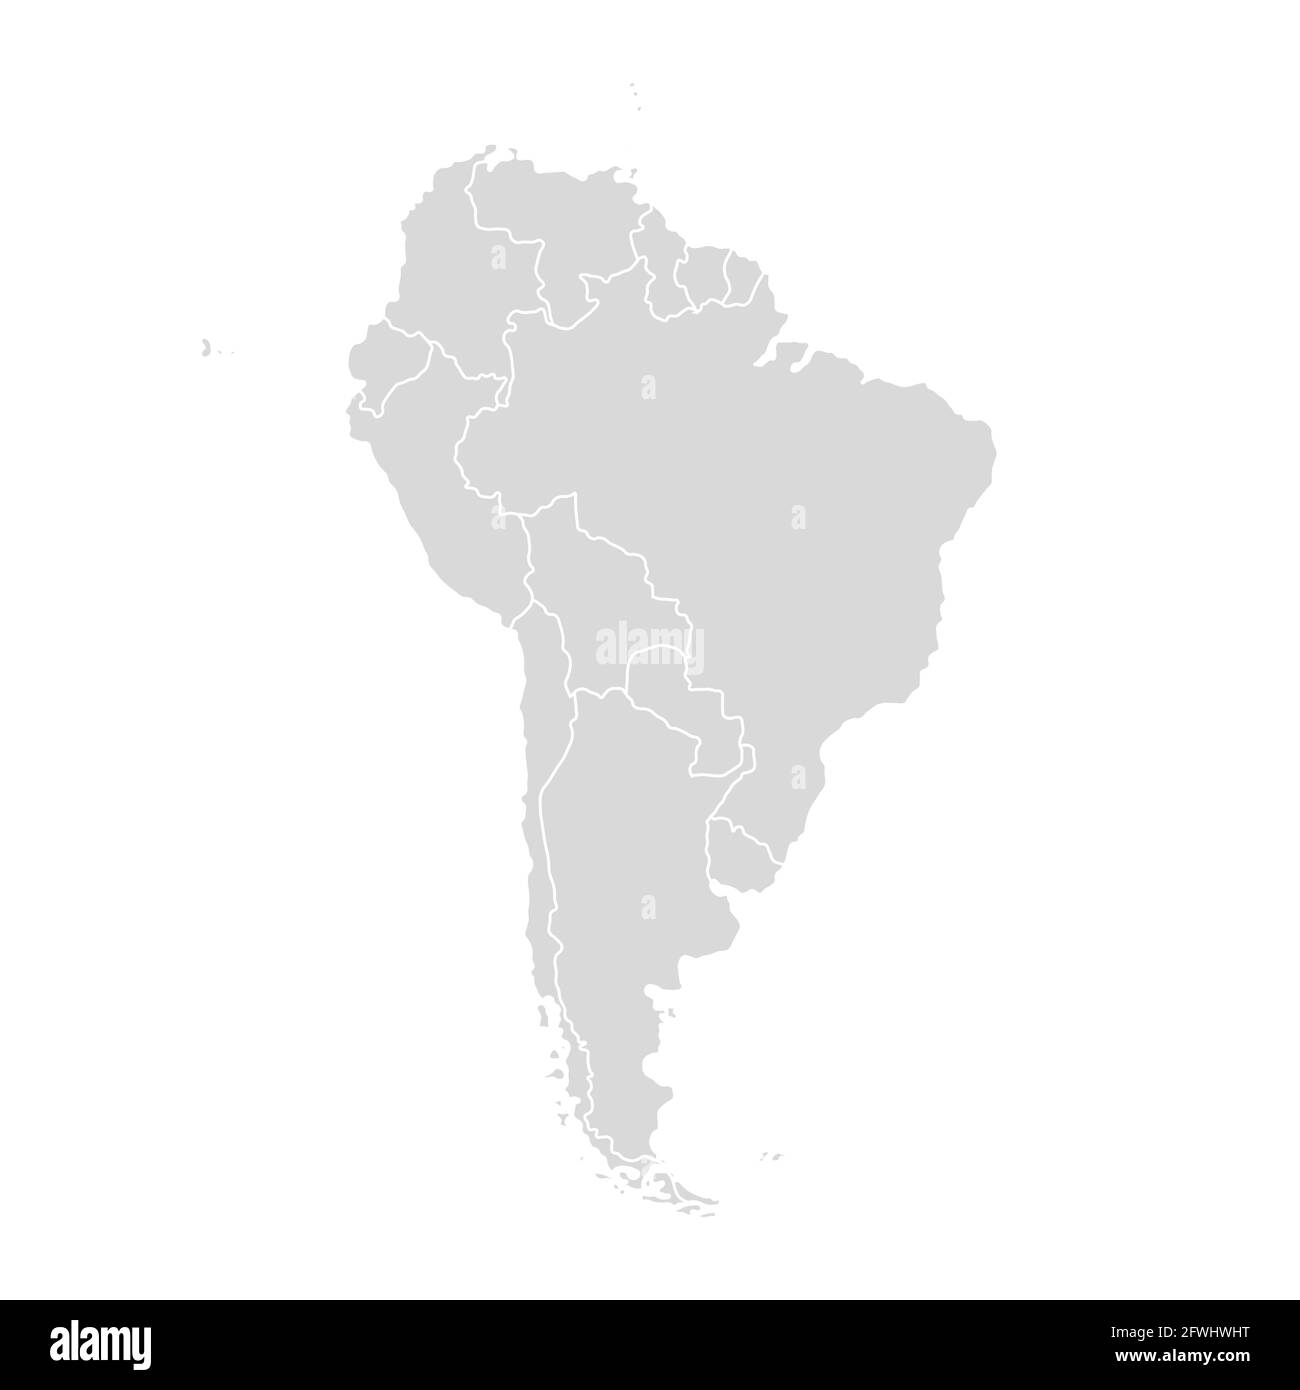 Vektorkarte Südamerika. Weltkarte Lateinamerika Stock Vektor